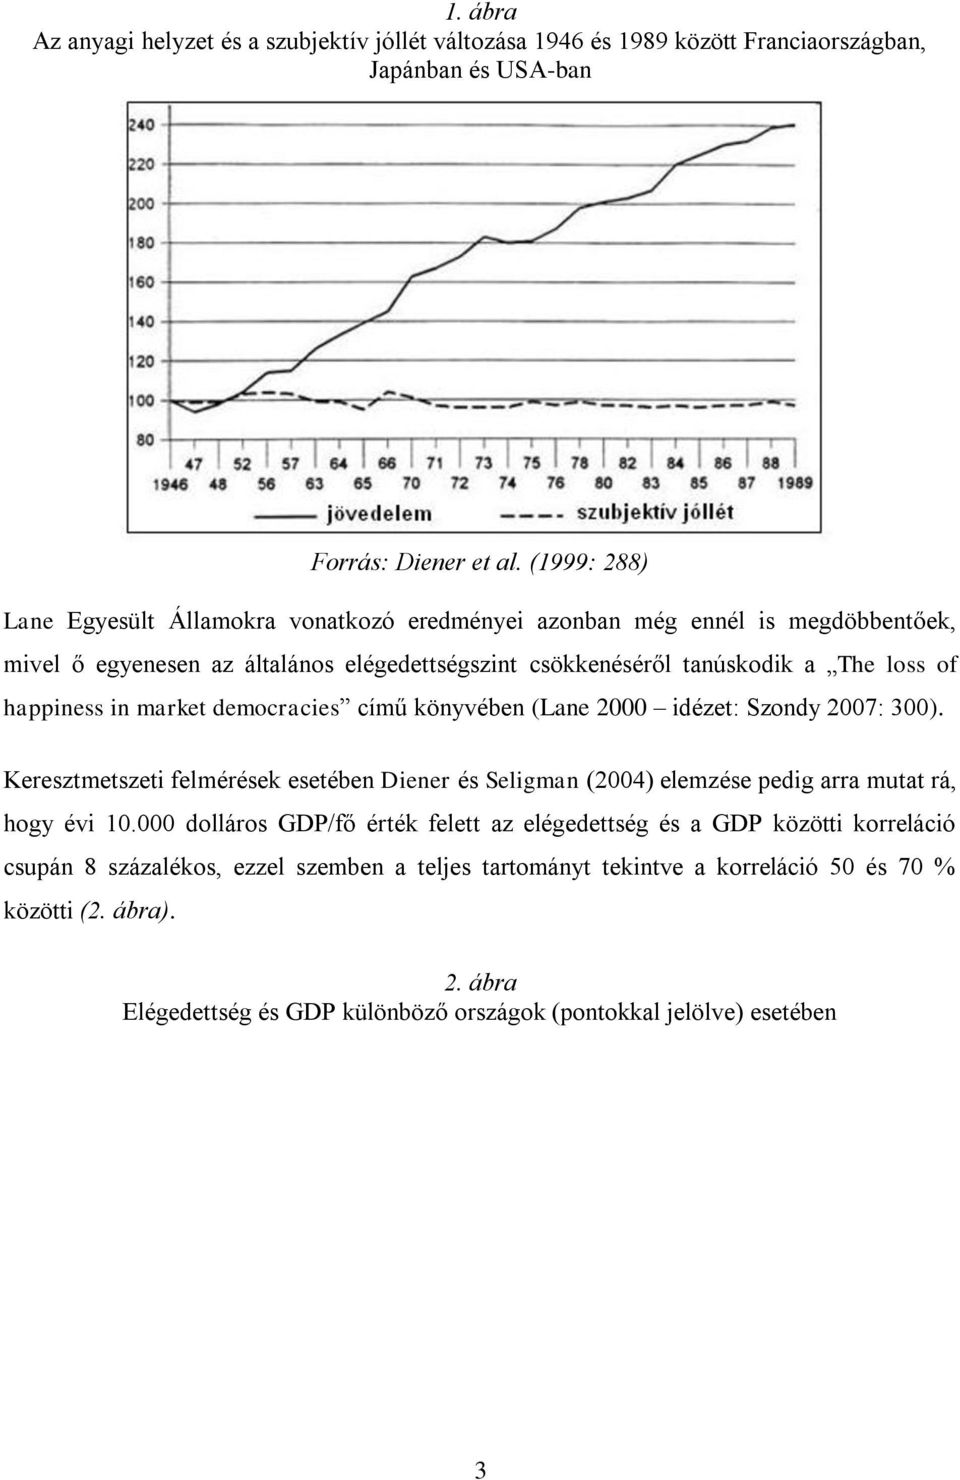 in market democracies című könyvében (Lane 2000 idézet: Szondy 2007: 300). Keresztmetszeti felmérések esetében Diener és Seligman (2004) elemzése pedig arra mutat rá, hogy évi 10.